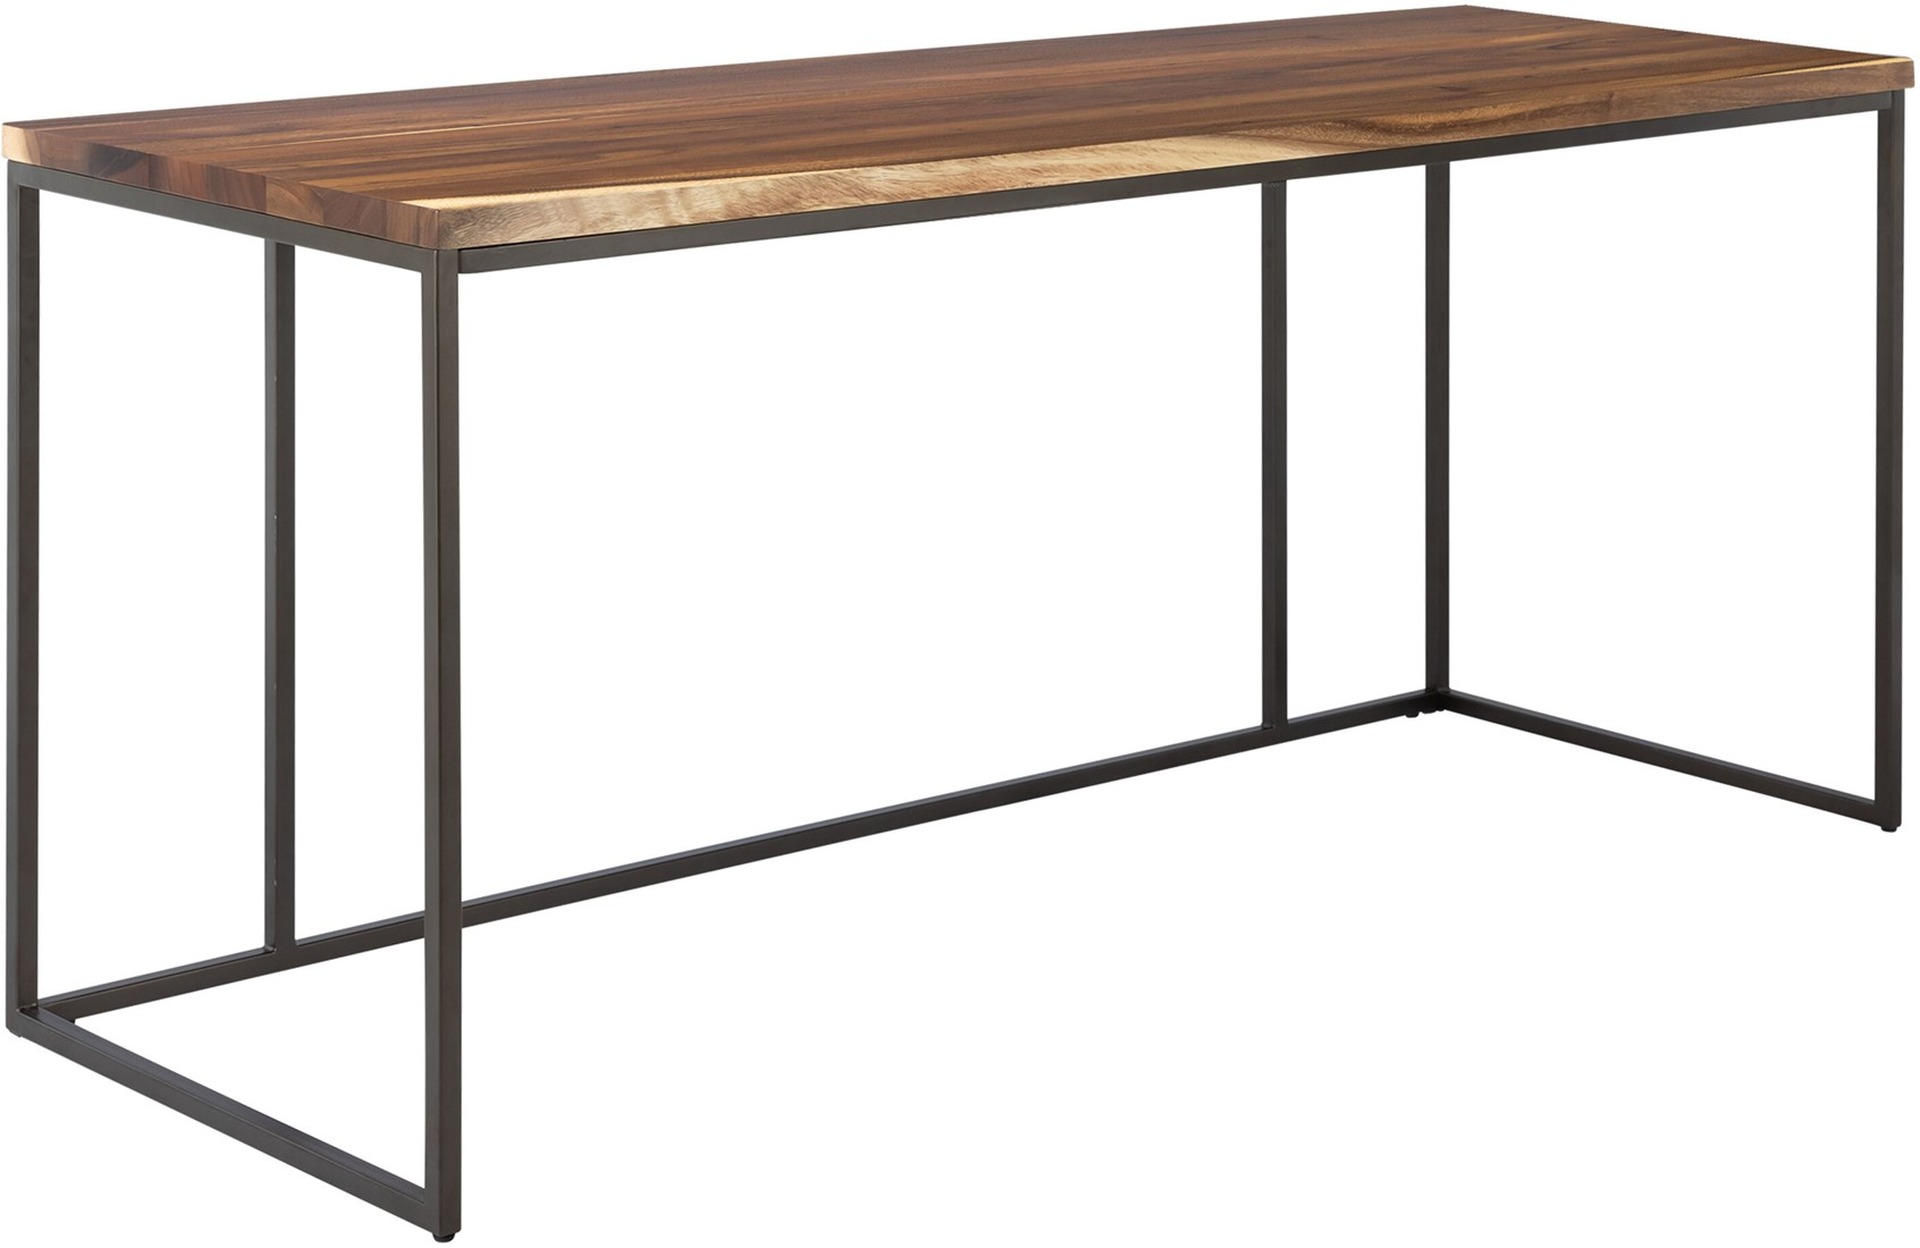 Der Schreibtisch Flare überzeugt mit seinem massivem aber auch industriellem Design. Gefertigt wurde der Tisch aus massivem Suar Holz, welches einen natürlichen Farbton besitzt. Der Tisch besitzt eine Länge von 140 cm.